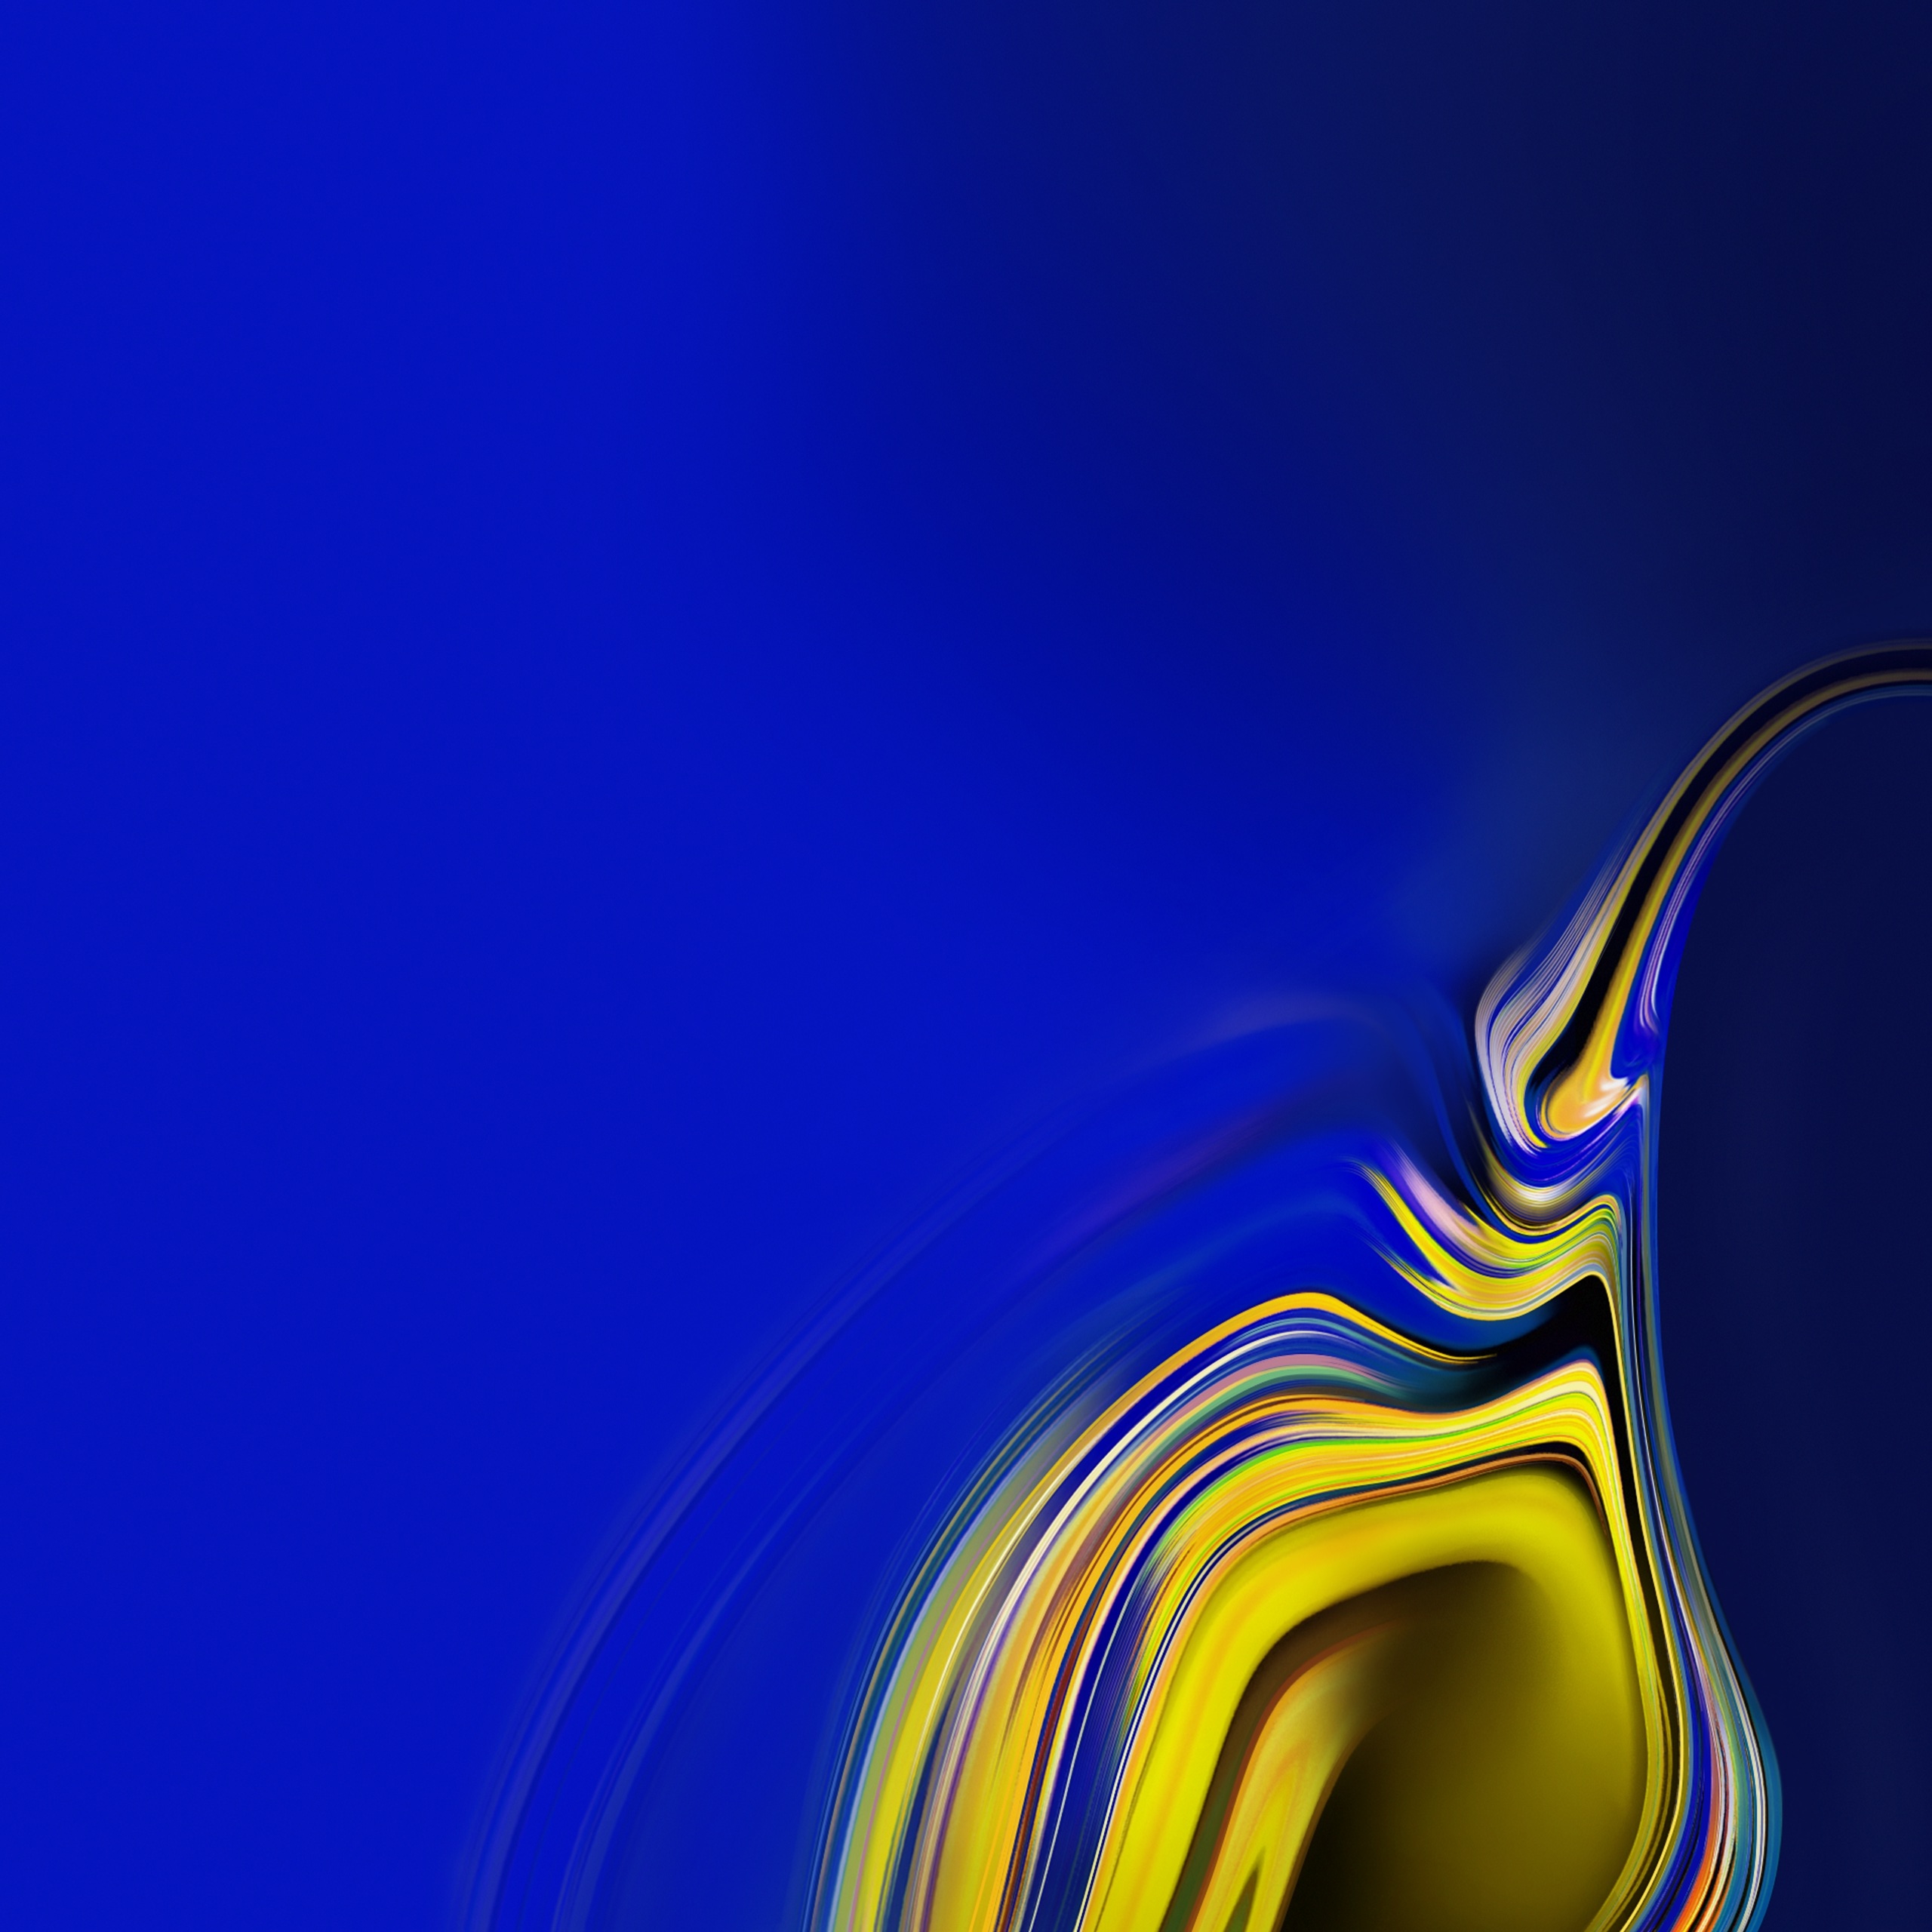 samsung galaxy wallpaper,blau,kobaltblau,gelb,wasser,elektrisches blau